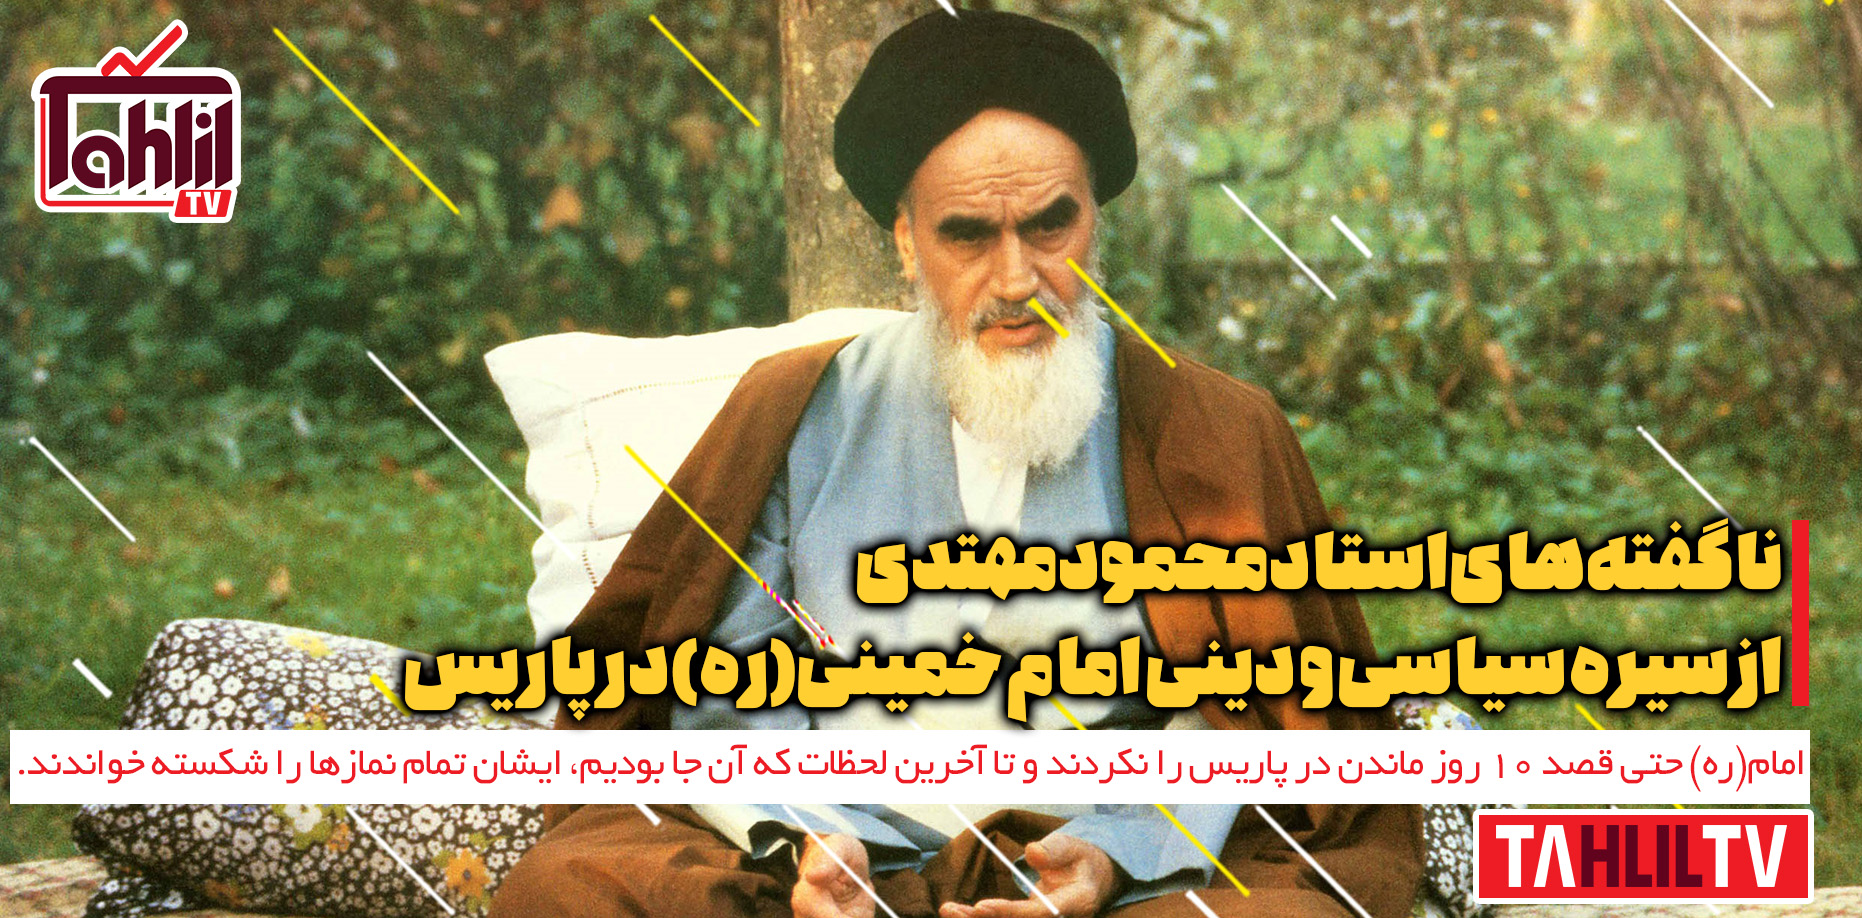 سیره سیاسی و دینی امام خمینی(ره) در پاریس